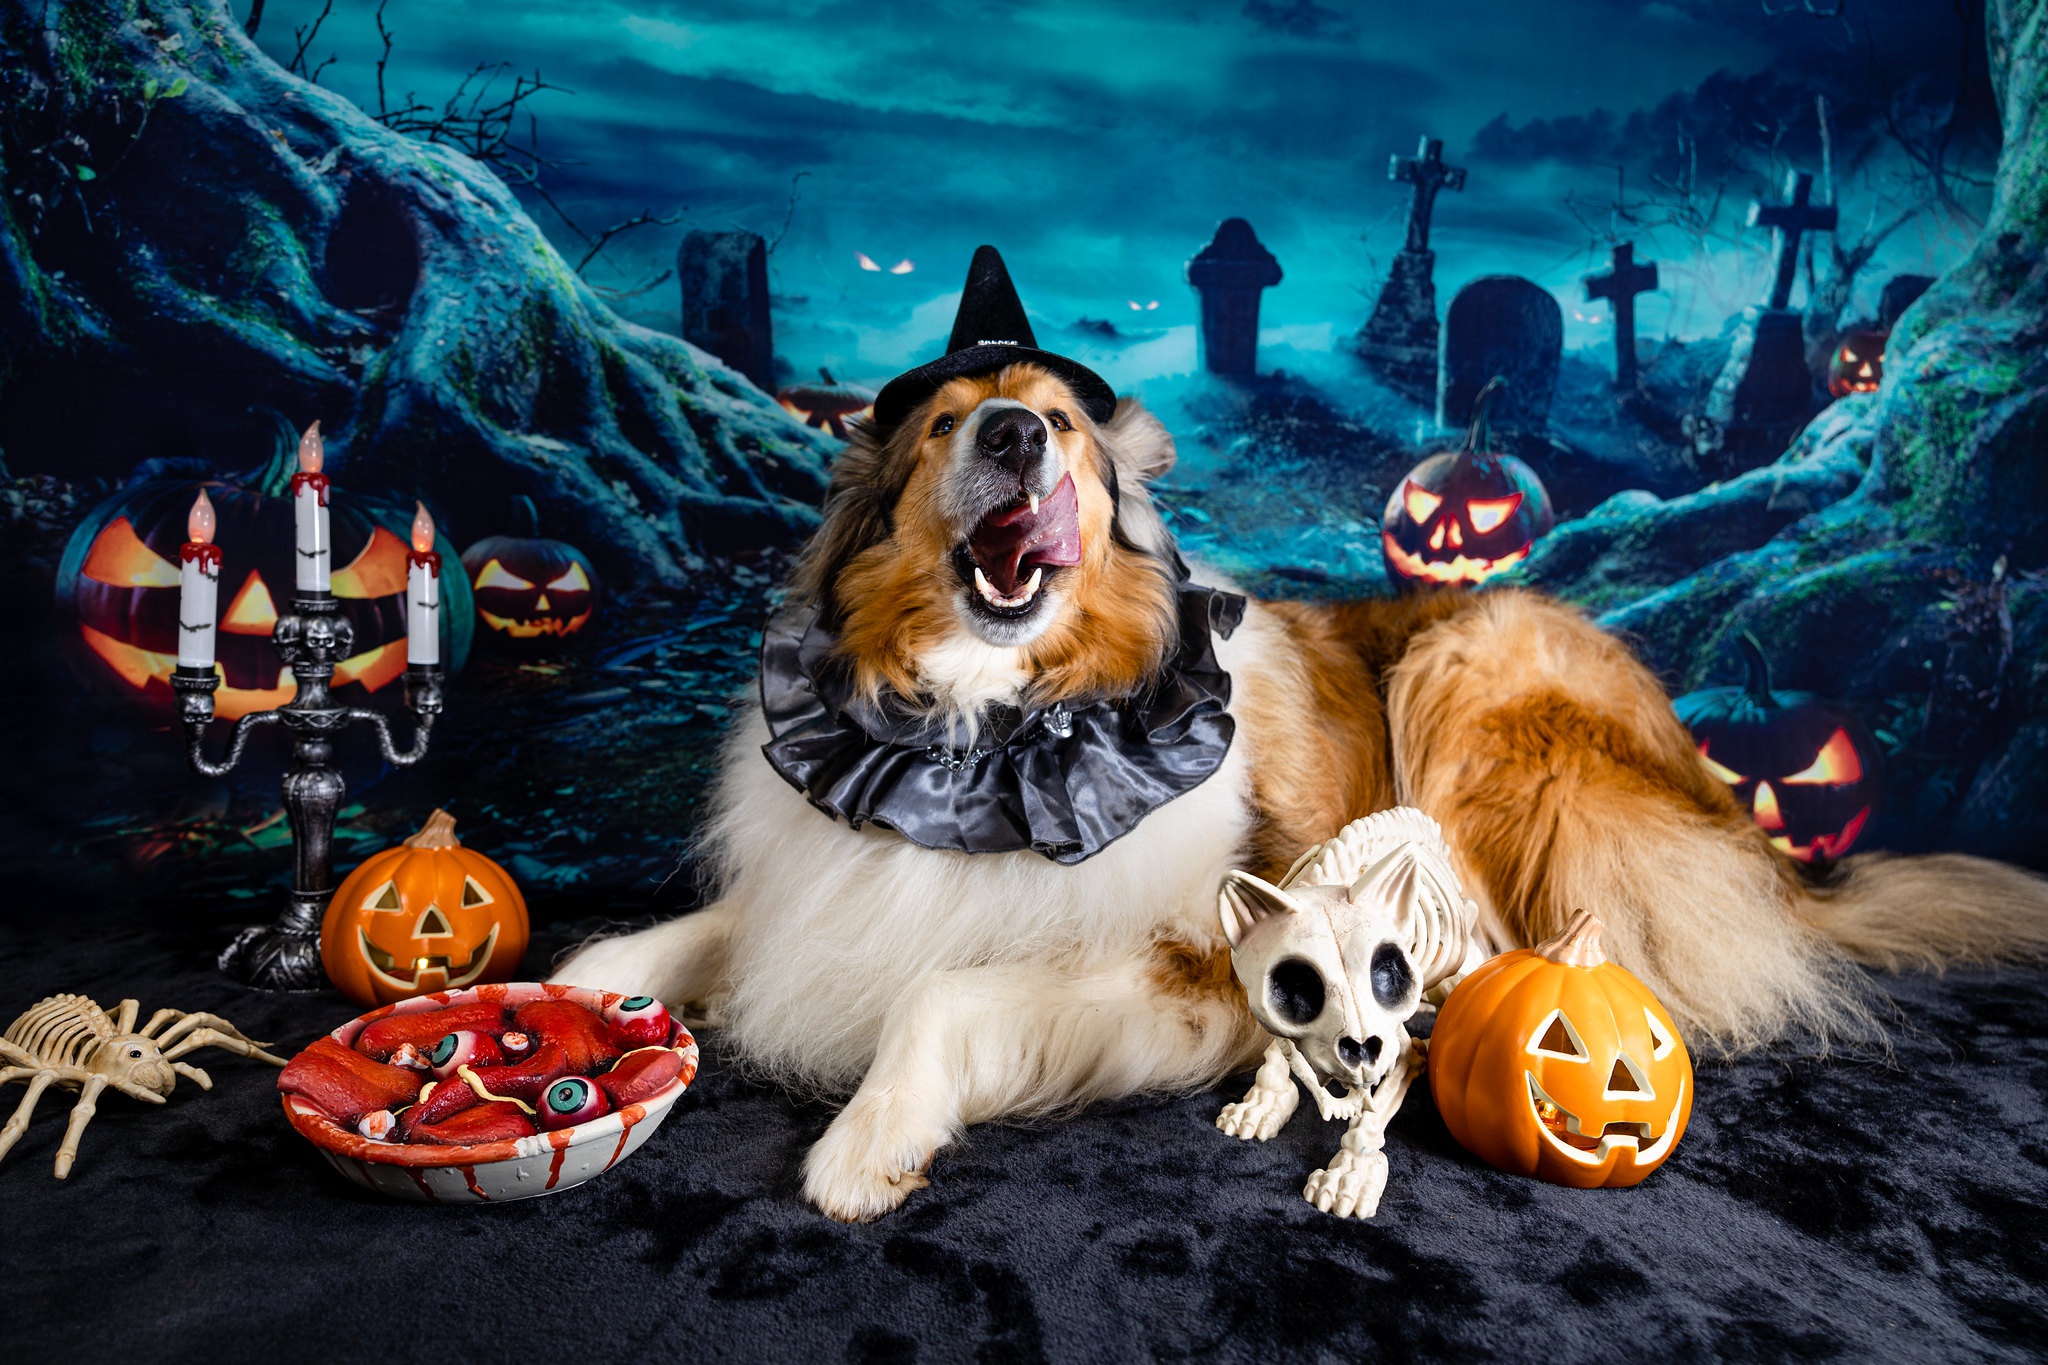 Скачать обои бесплатно Животные, Собаки, Собака, Фонарь Джека, Хеллоуин картинка на рабочий стол ПК